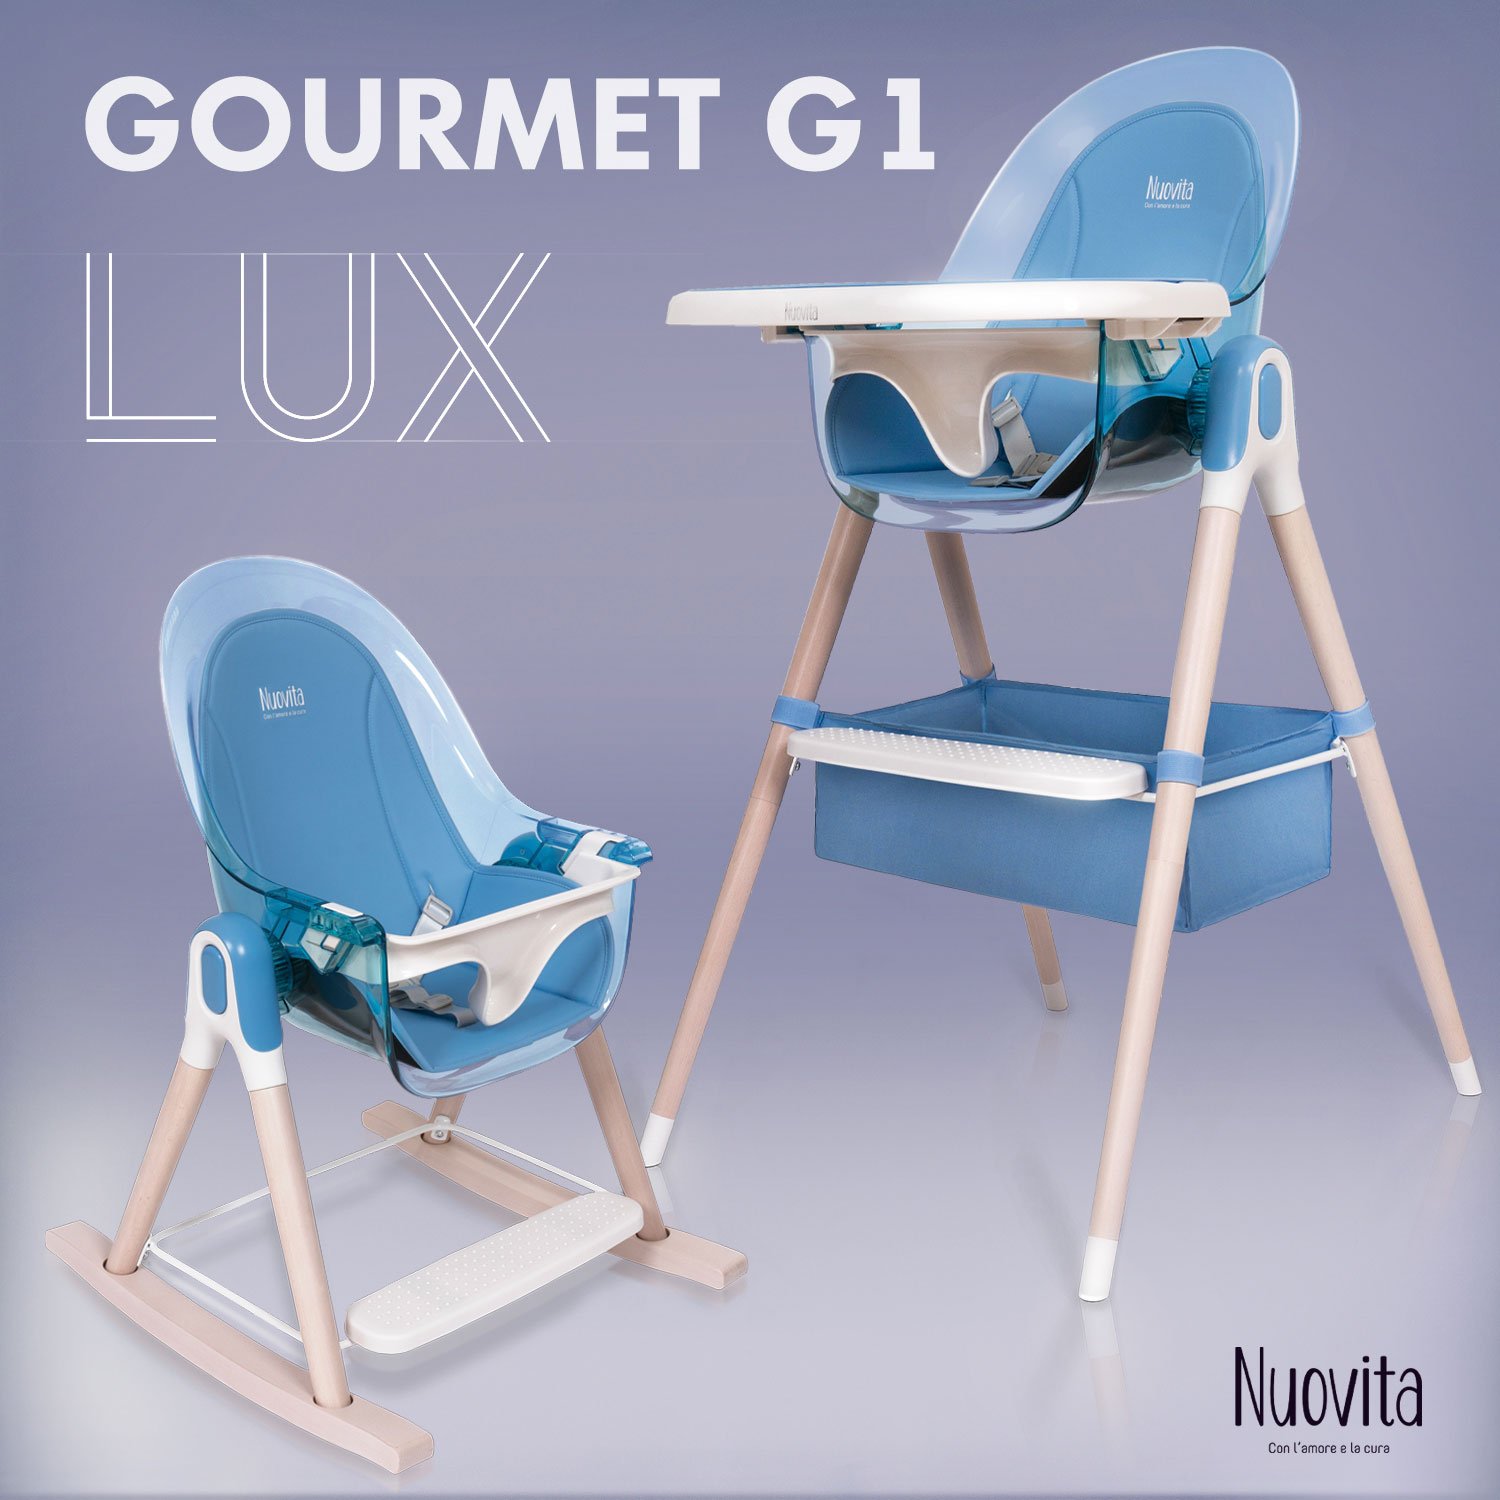 Стульчик для кормления 3 в 1 Nuovita Gourmet G1 Lux (Blu/Голубой) стульчик для кормления nuovita gourmet g1 lux 3 в 1